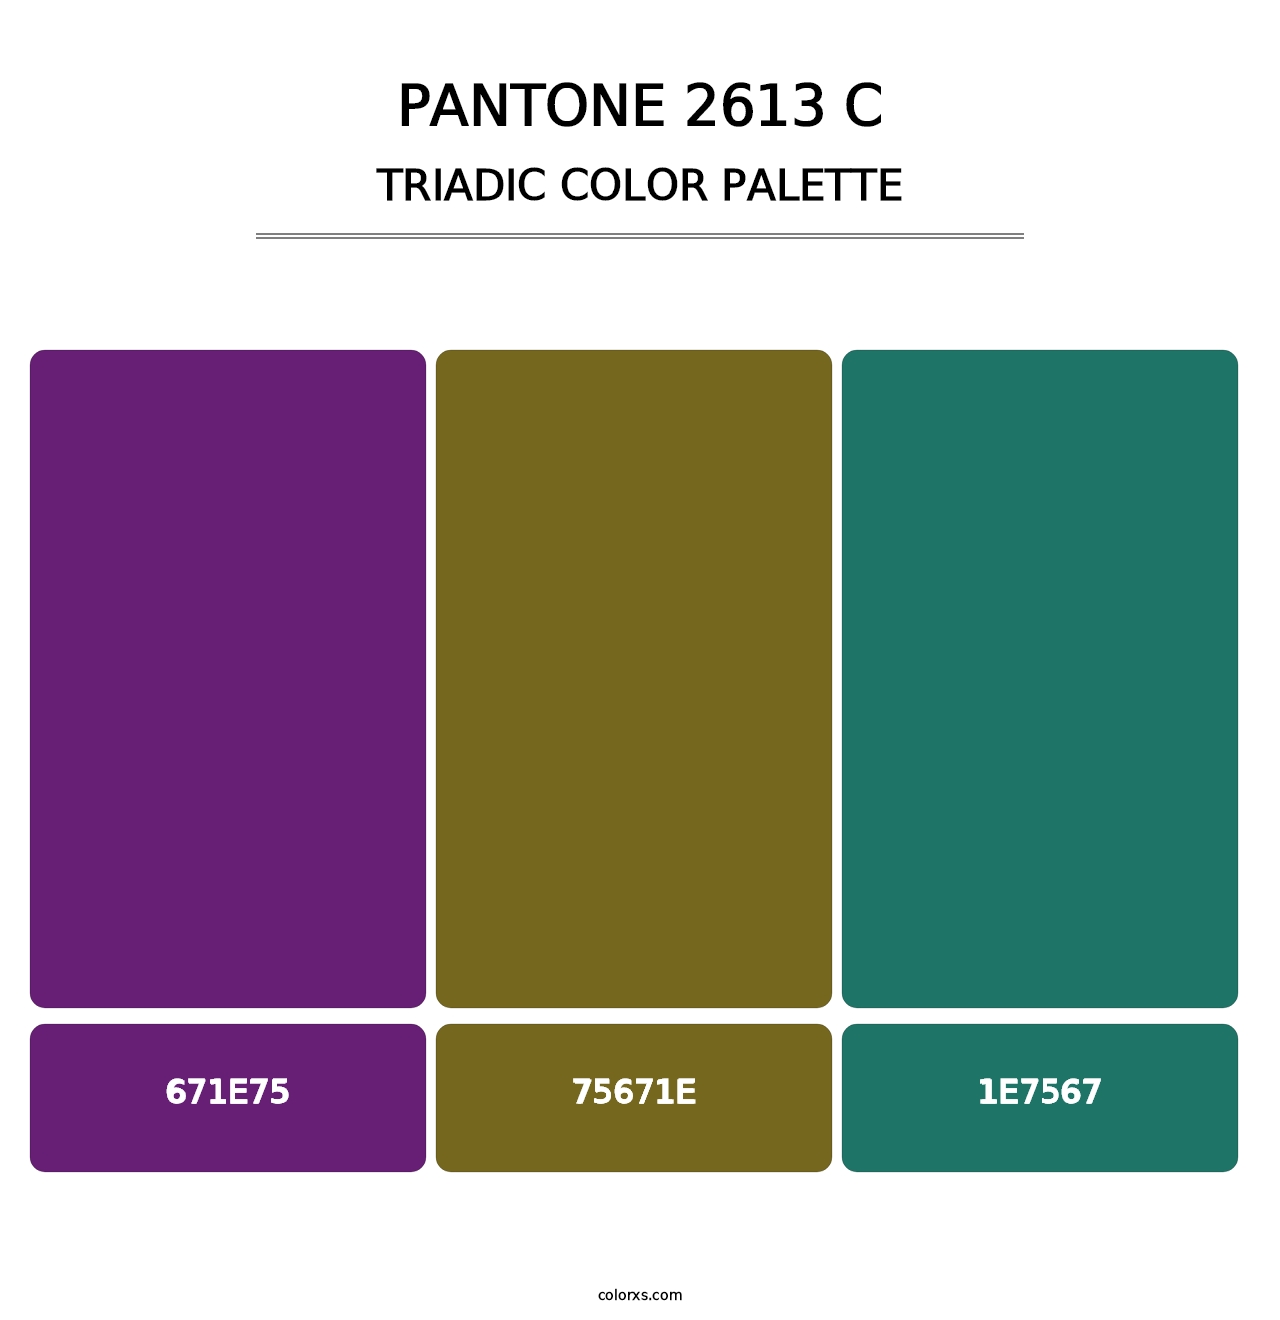 PANTONE 2613 C - Triadic Color Palette